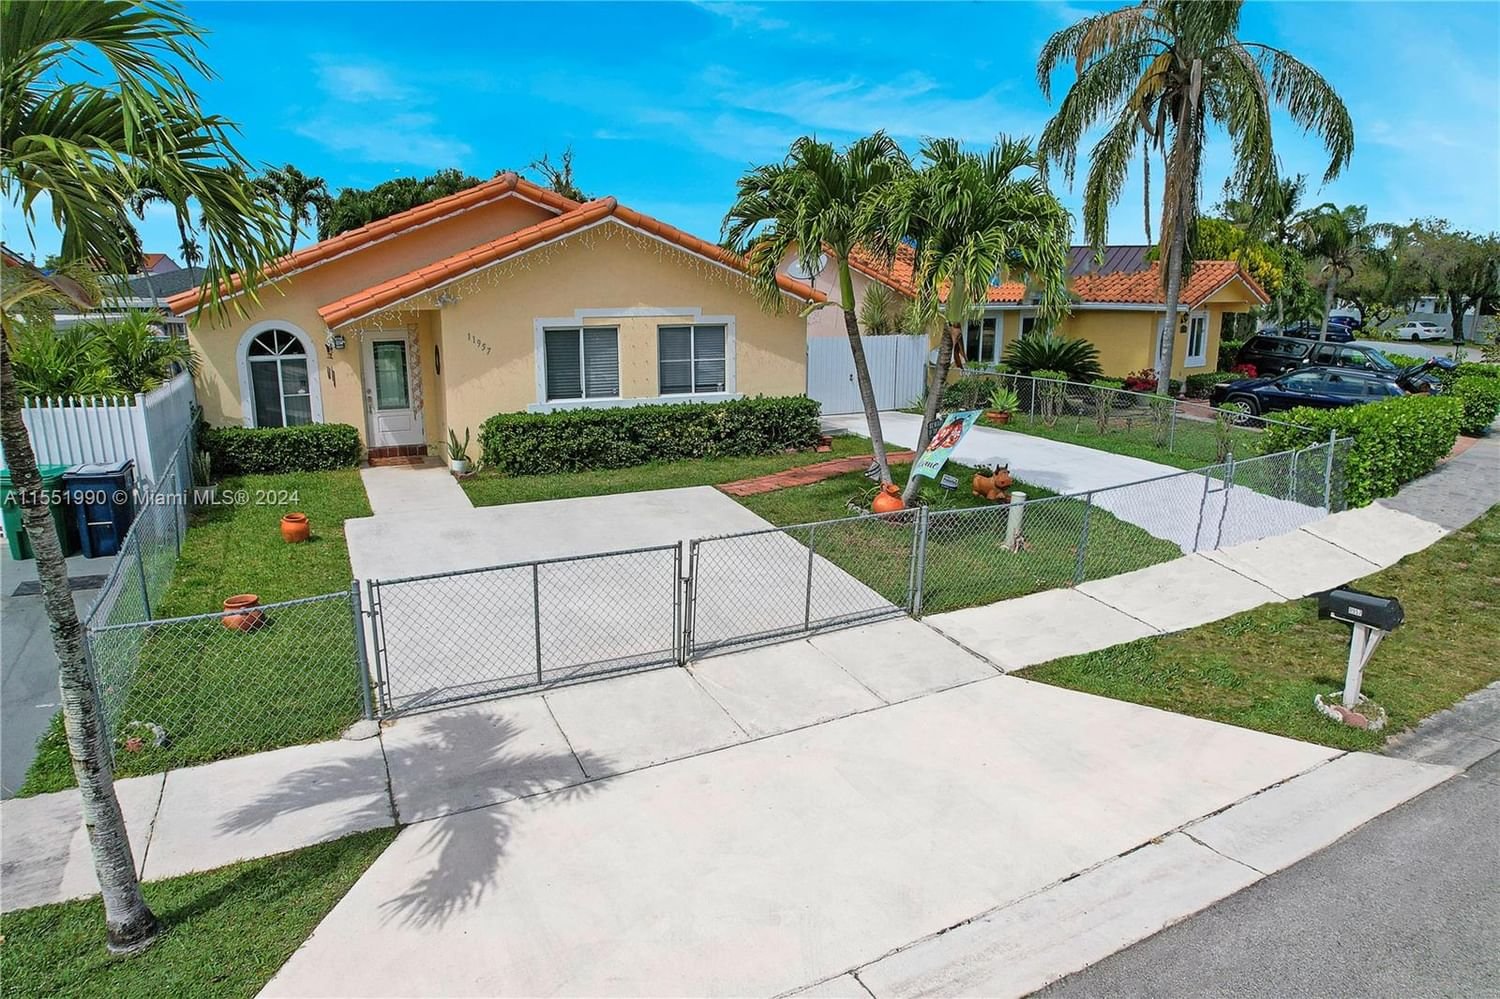 Real estate property located at 11957 210th St, Miami-Dade County, OAK RIDGE VILLAS SEC 1 RE, Miami, FL